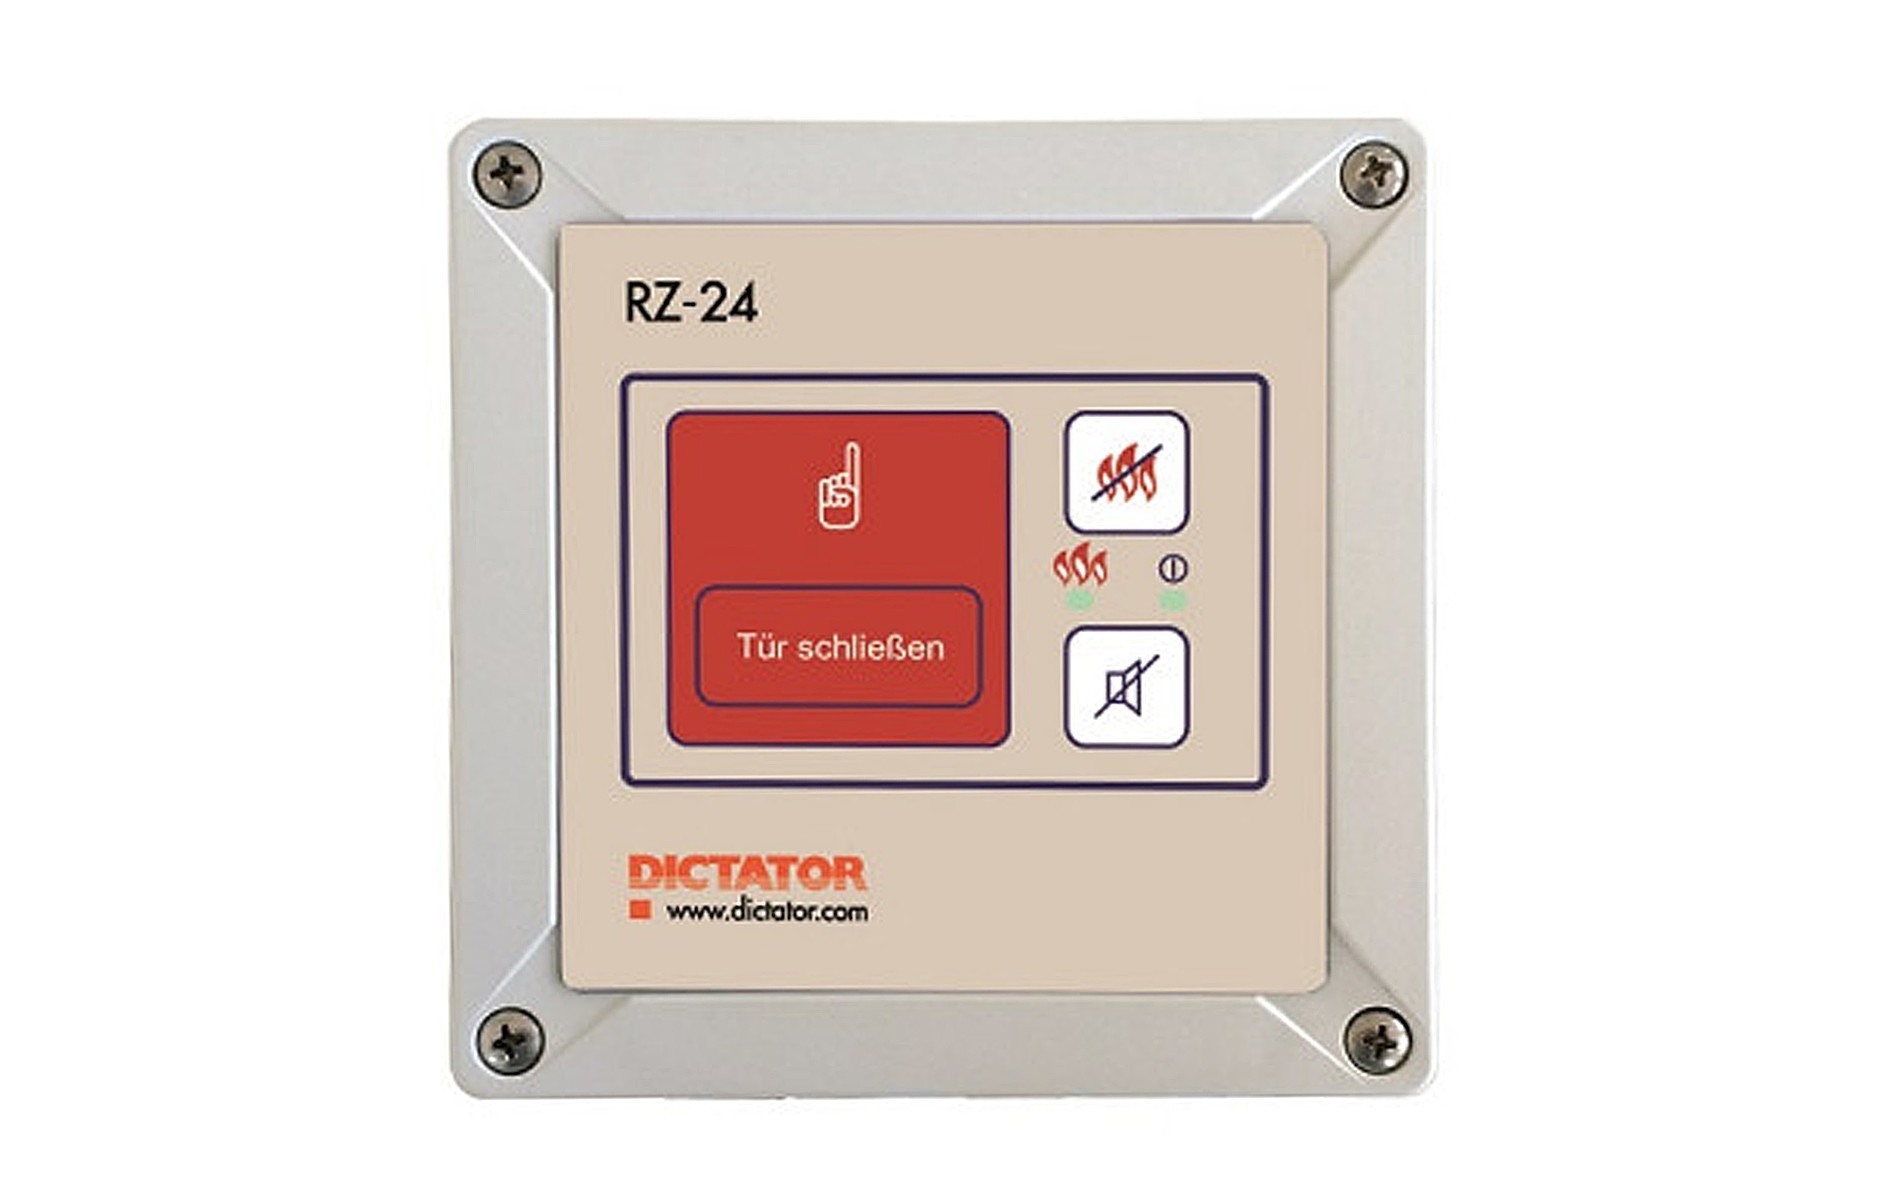 Dictator Zentrale RZ-24 mit Netzteil und Auslösevorrichtung - inkl. 2 x RM 4000 opt. Rauchmelder 